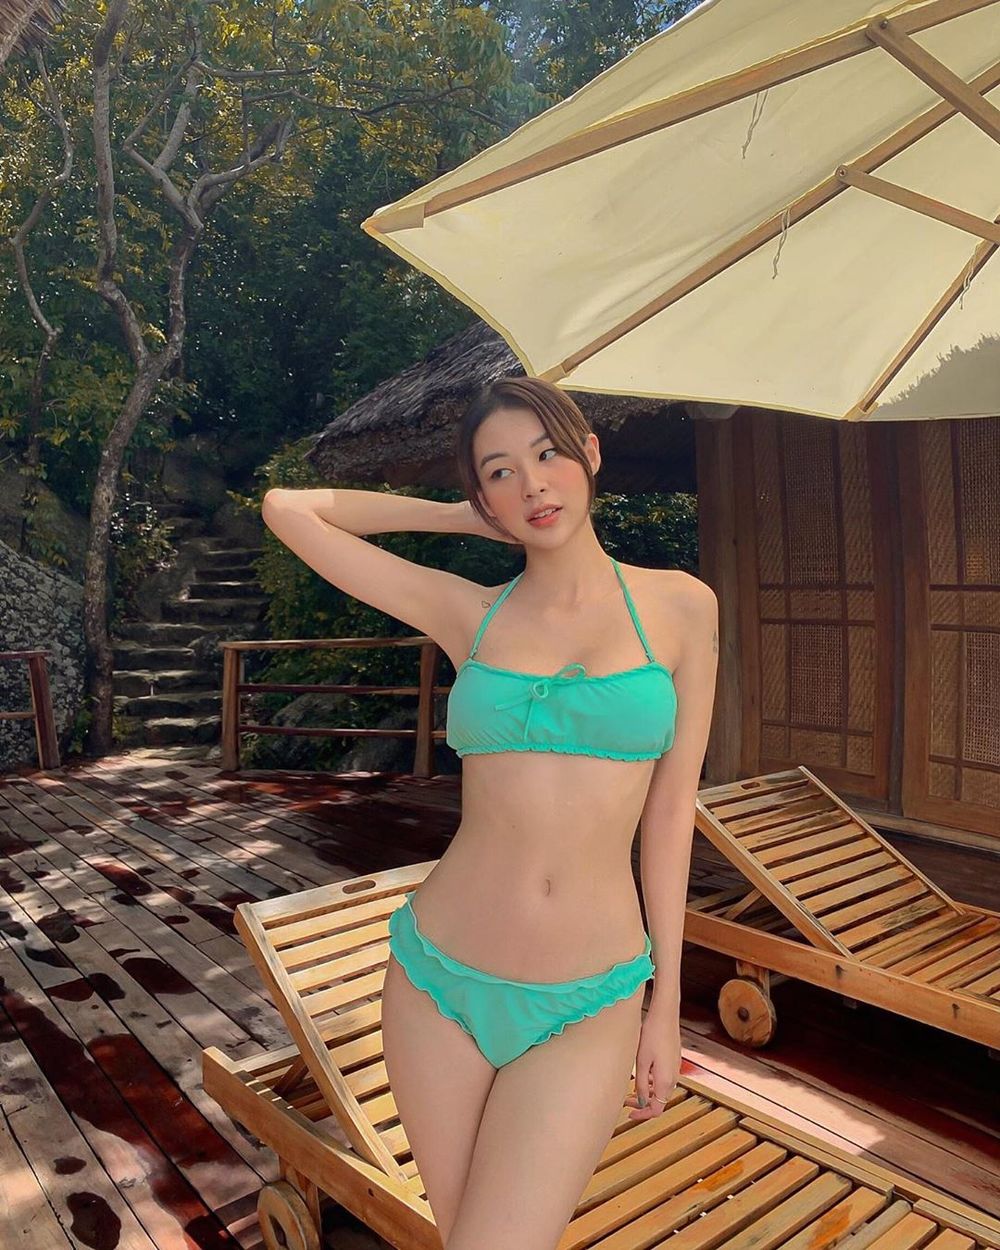  
Phí Phương Anh diện bikini tông xanh với phần viền bèo lạ mắt. (Ảnh: FBNV)